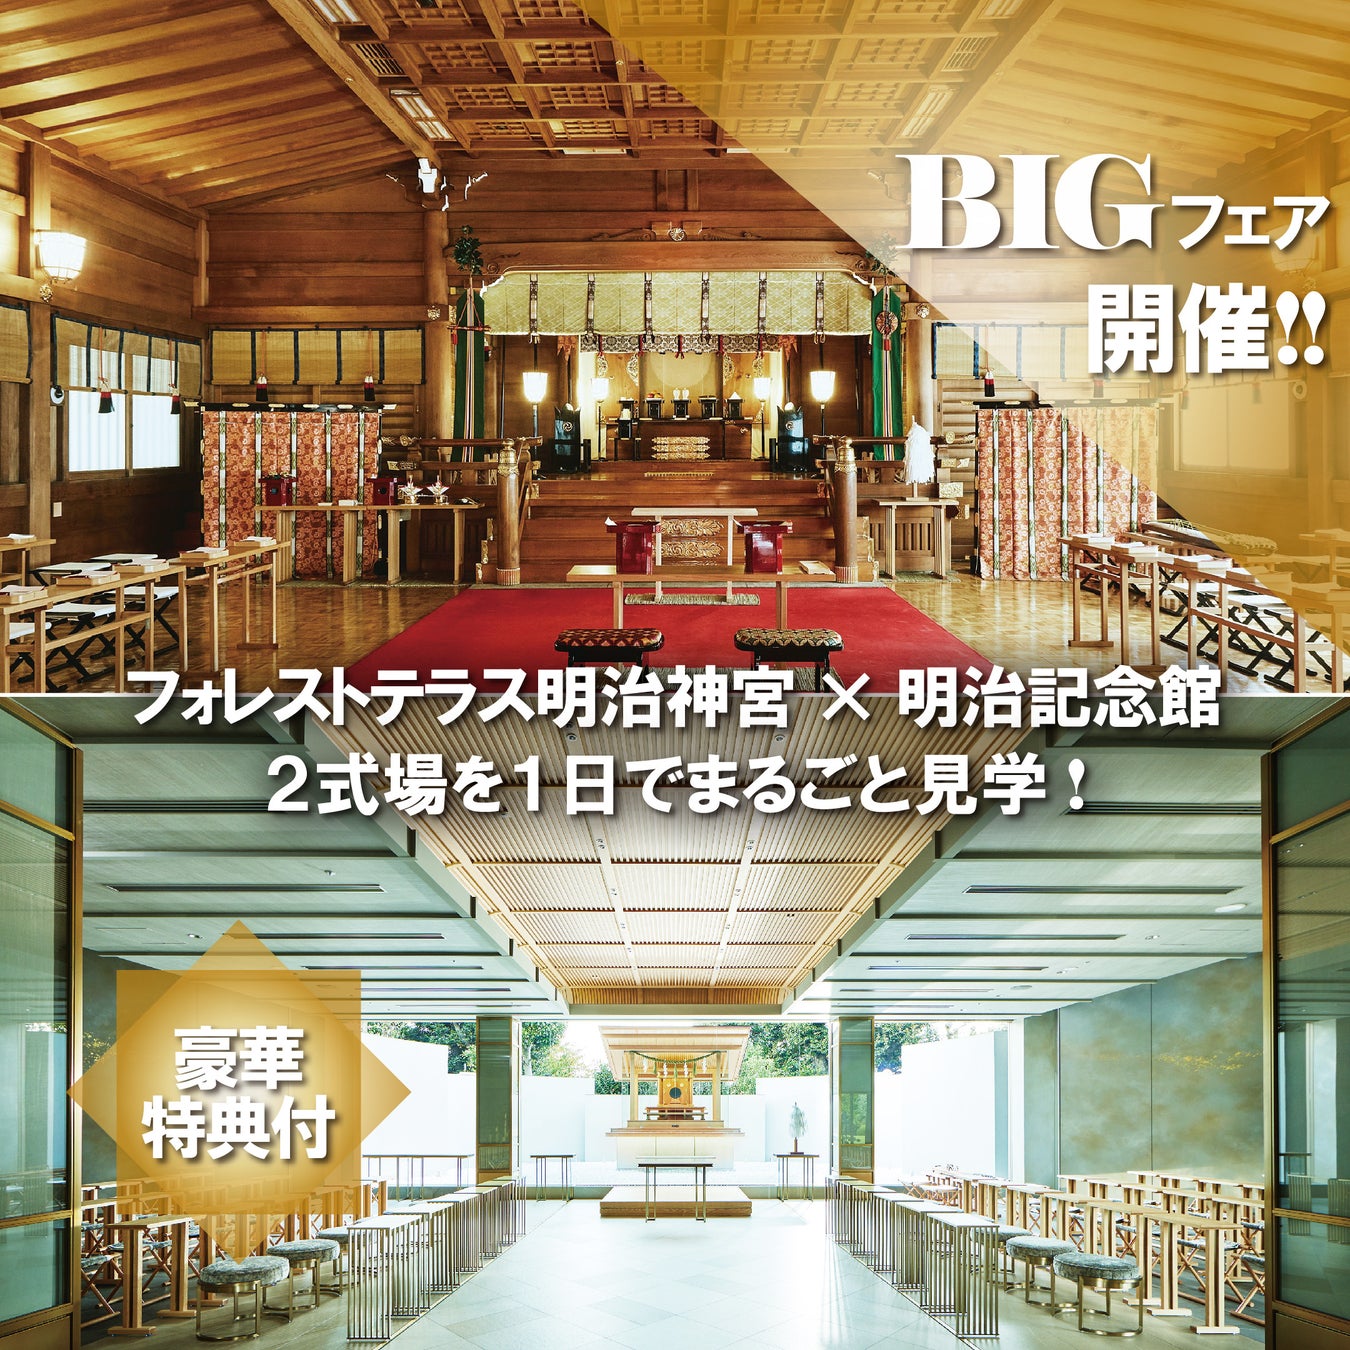 長野・軽井沢に森の安らぎを感じる会員制貸別荘がグランドオープン – ホテルレジデンス“YAMATO STAY”